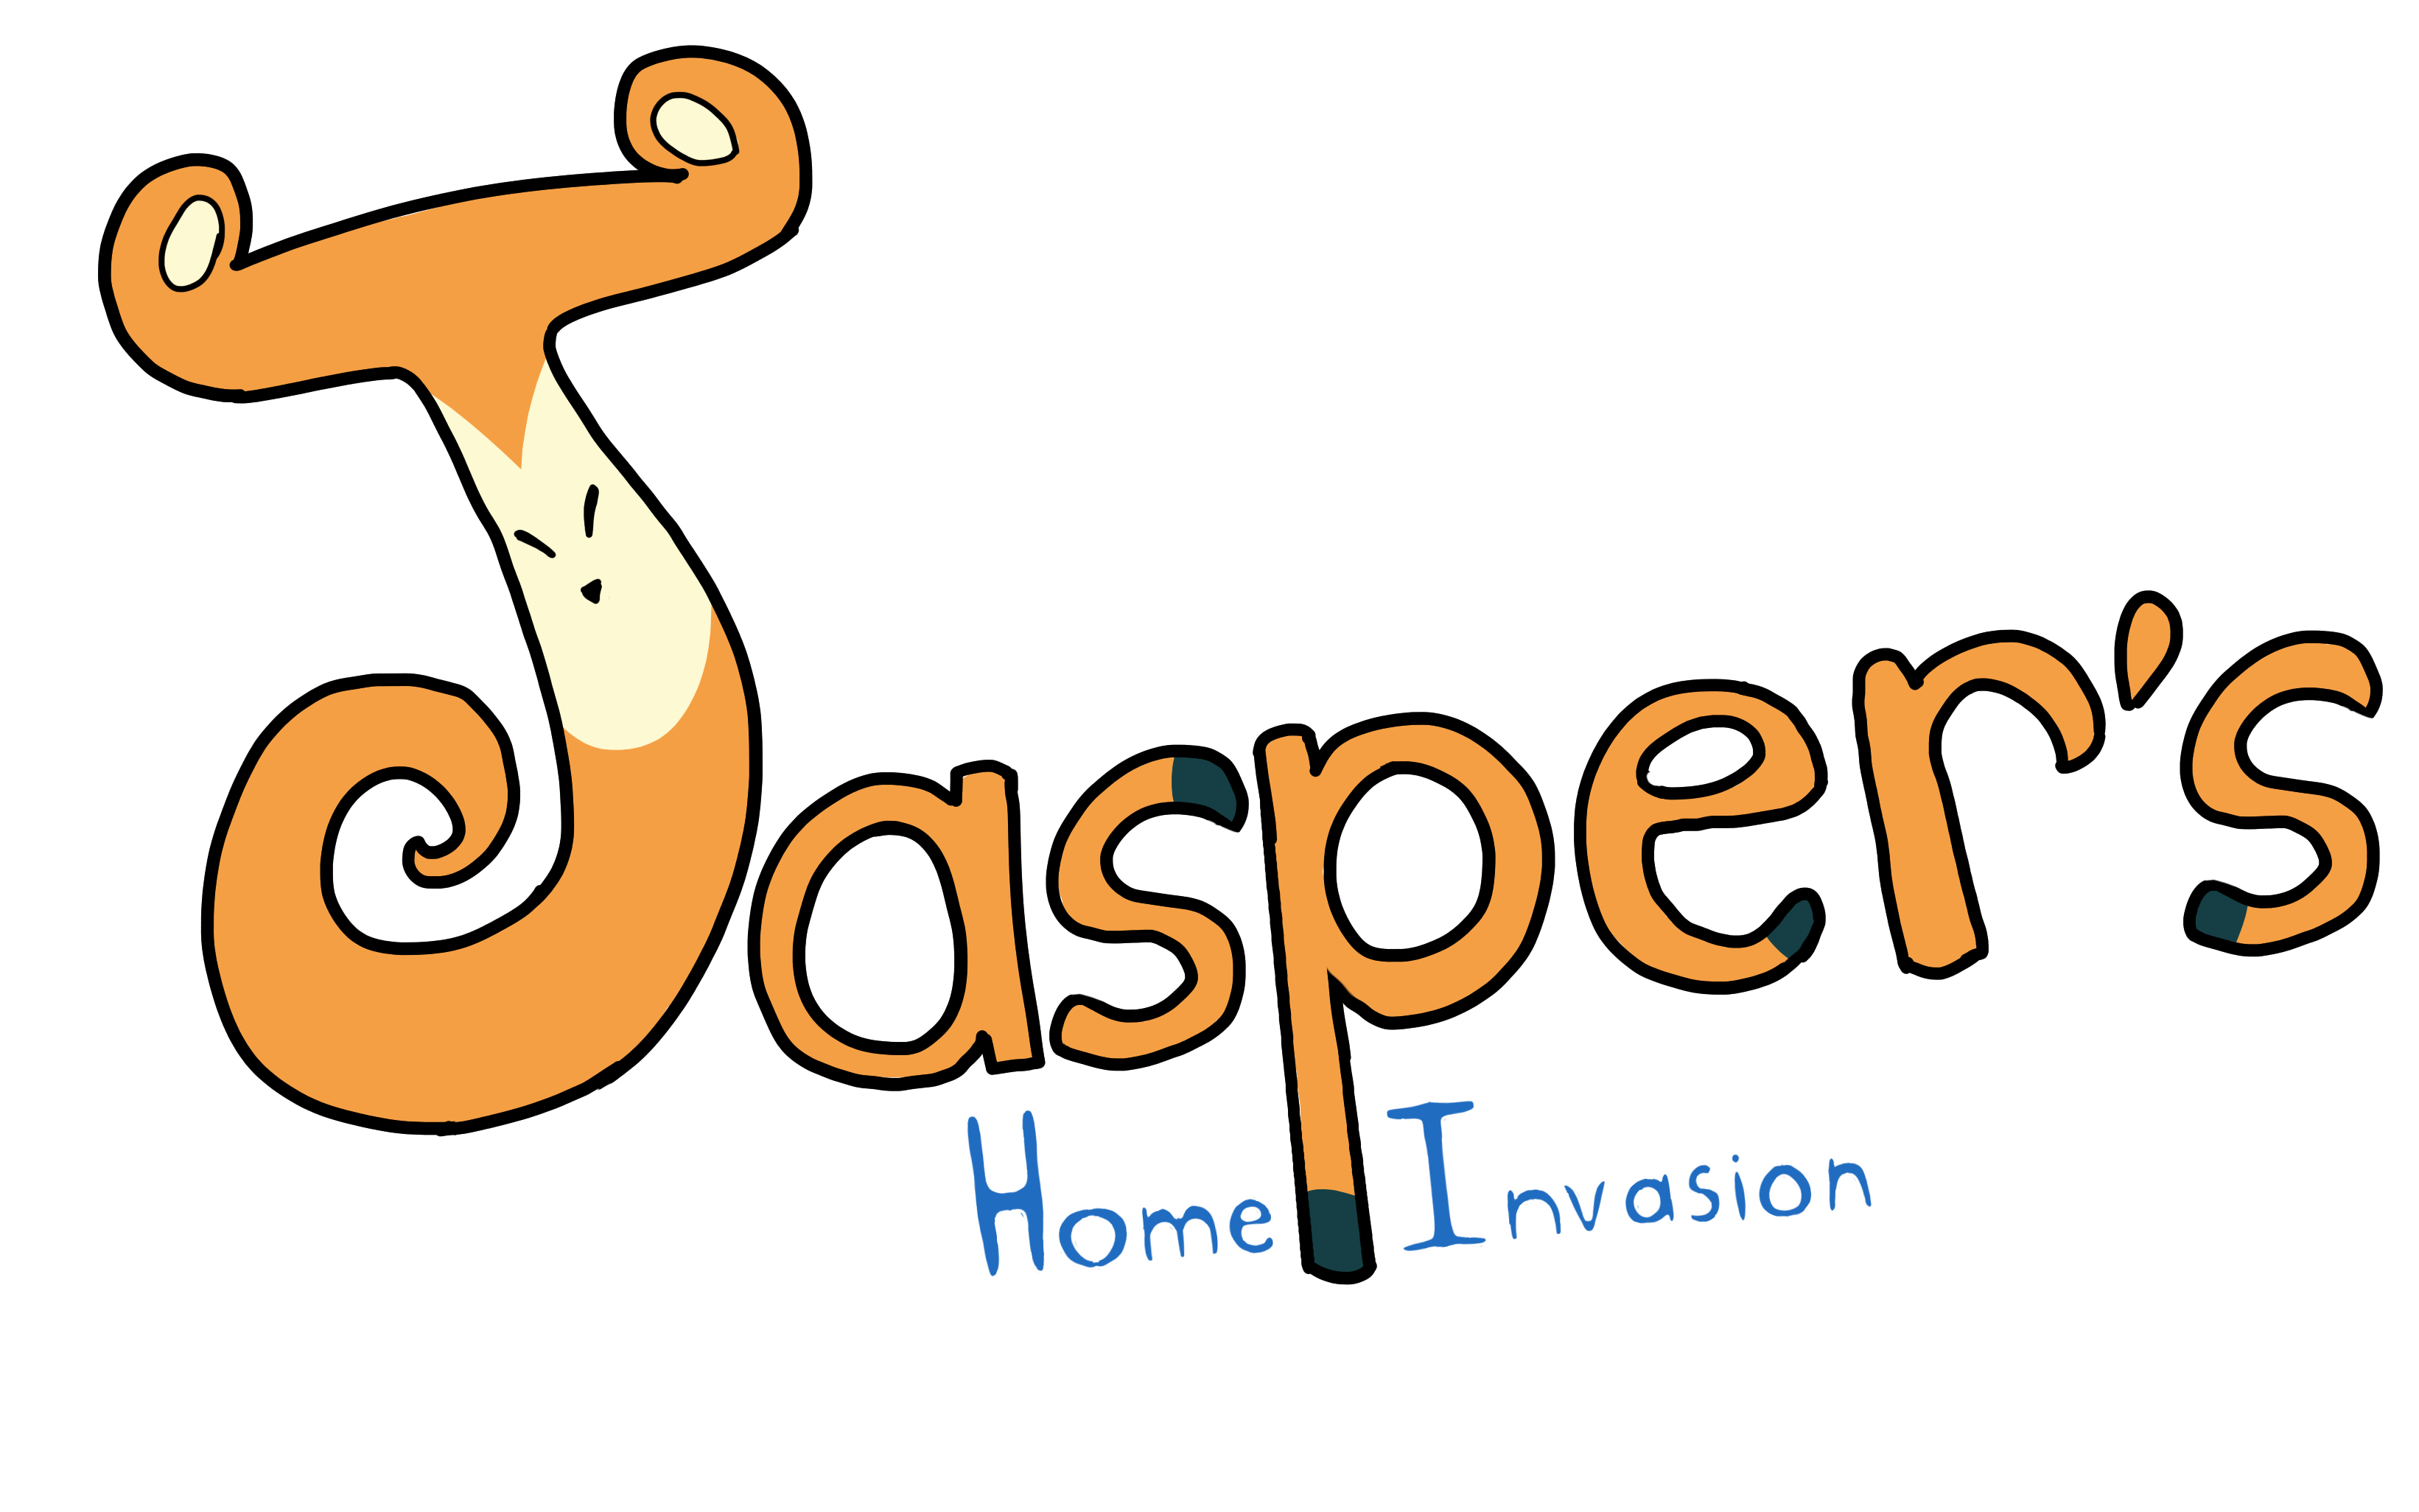 Jasper's Home Invasion (And Mass Stamp Heist)